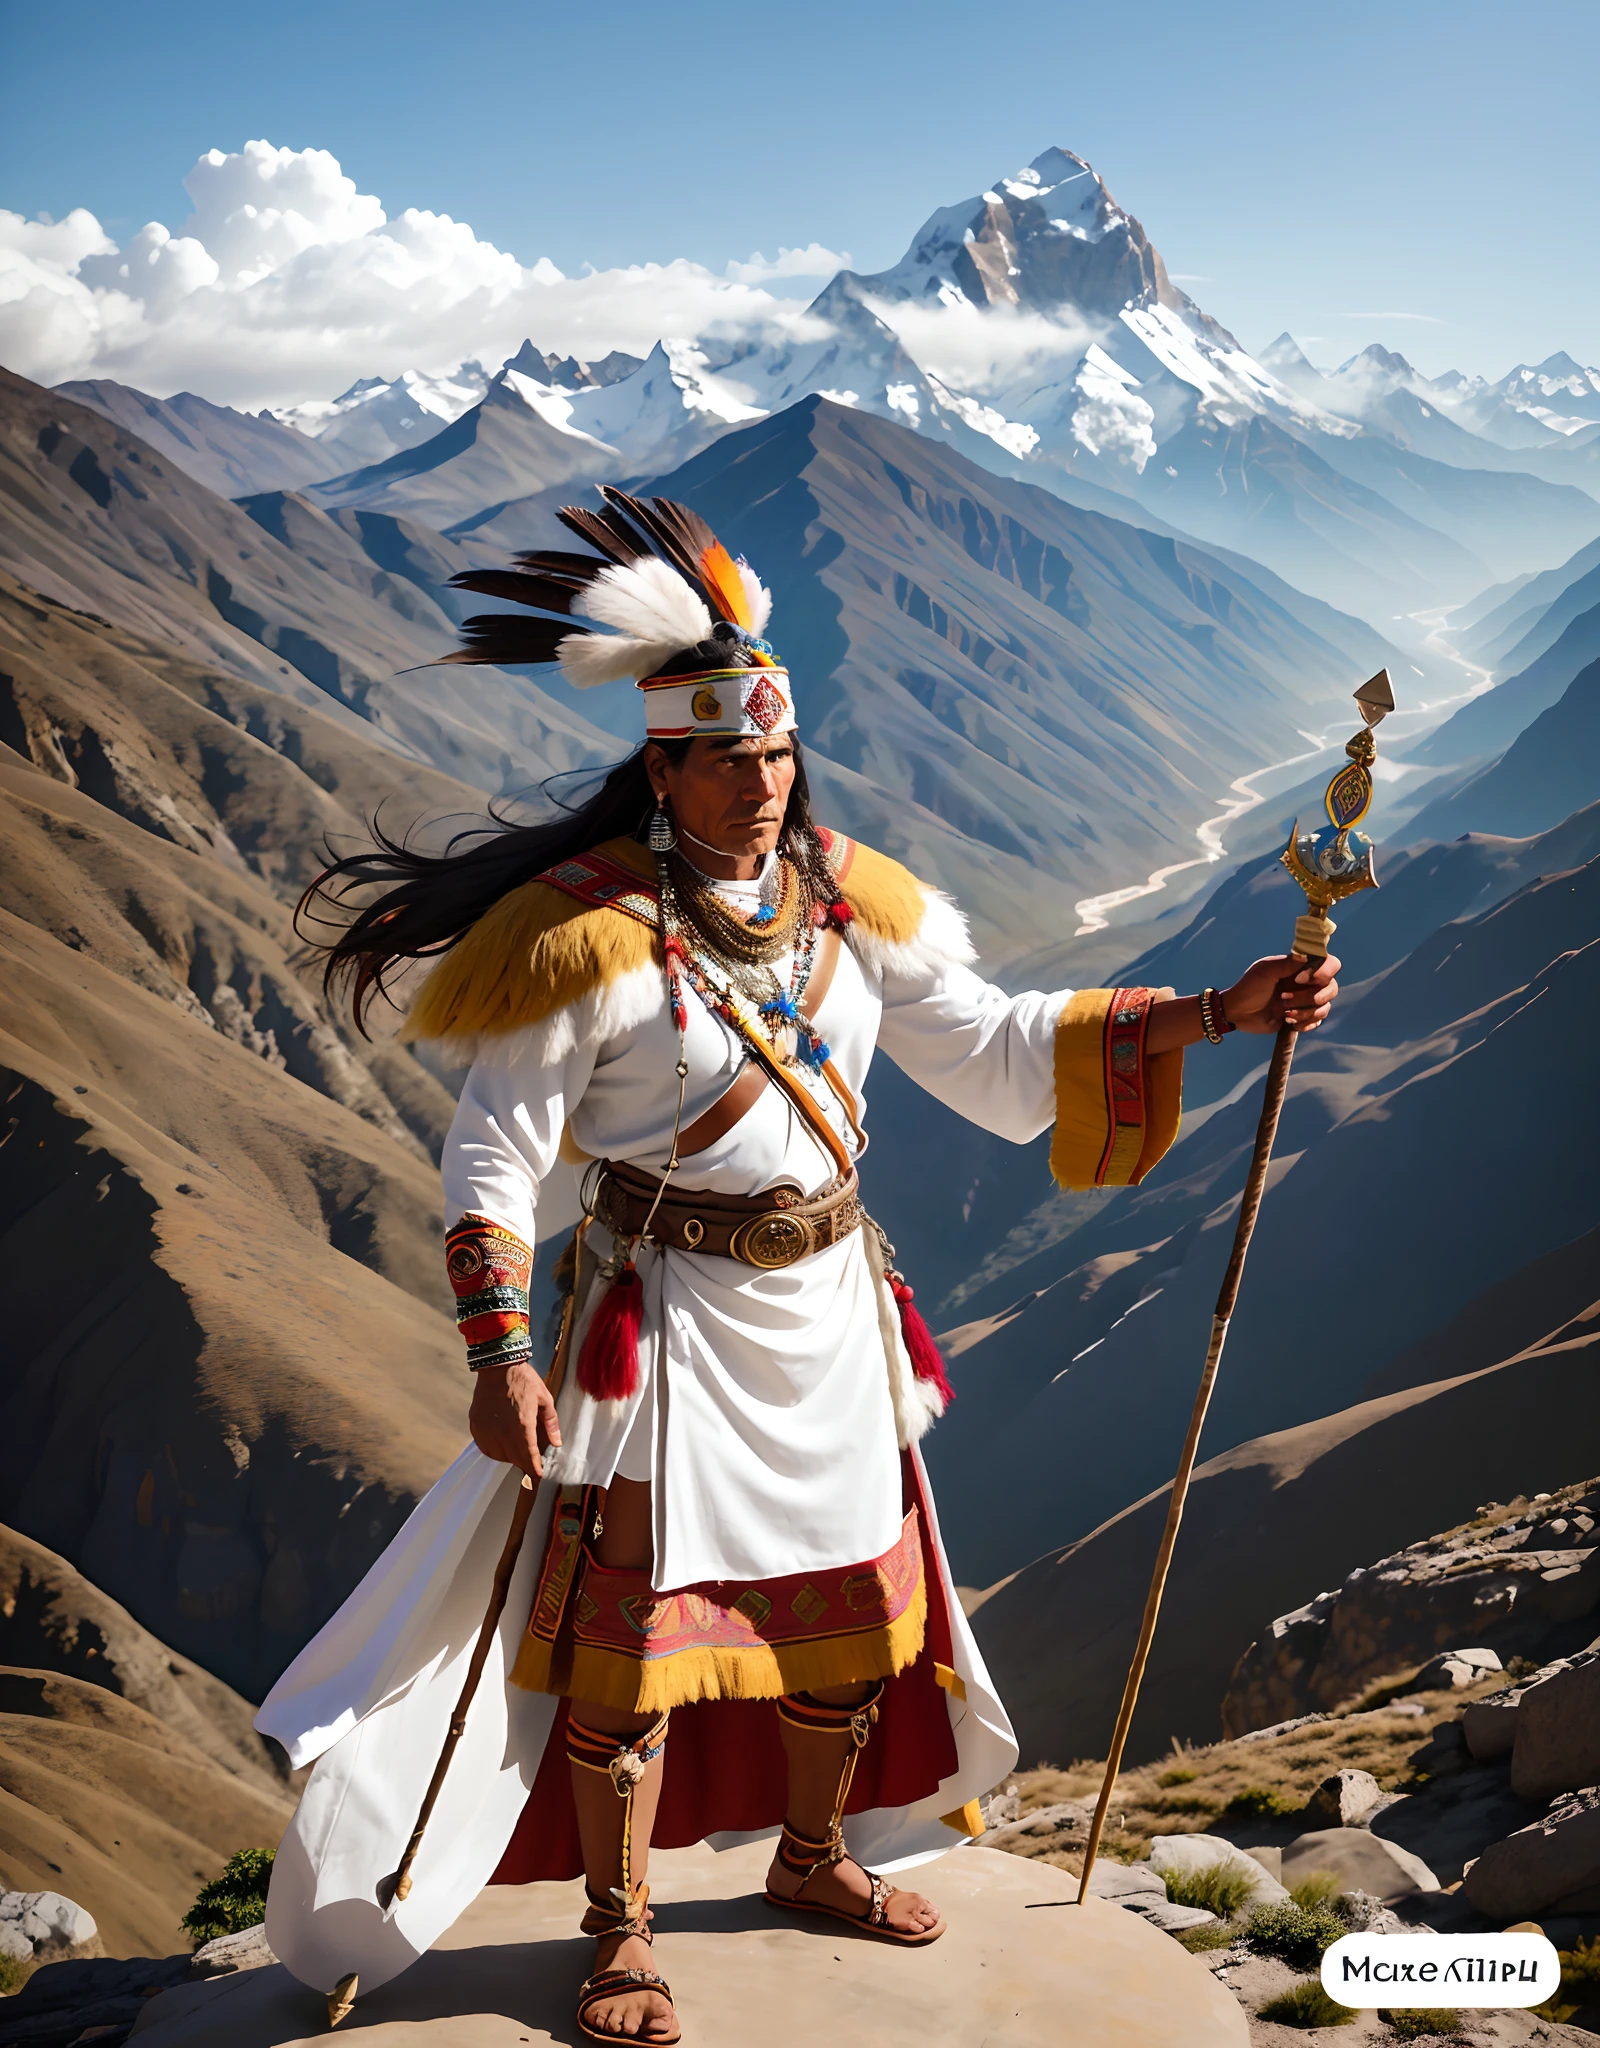 Hombre indígena inca de 50 años con ropa blanca y dorada sosteniendo una lanza y de pie sobre una roca, en el fondo montañas de hielo Himalaya Tíbet, Guerrero indio con ropa de chamán, quechua, súper detallado, 8k, hiper realismo,